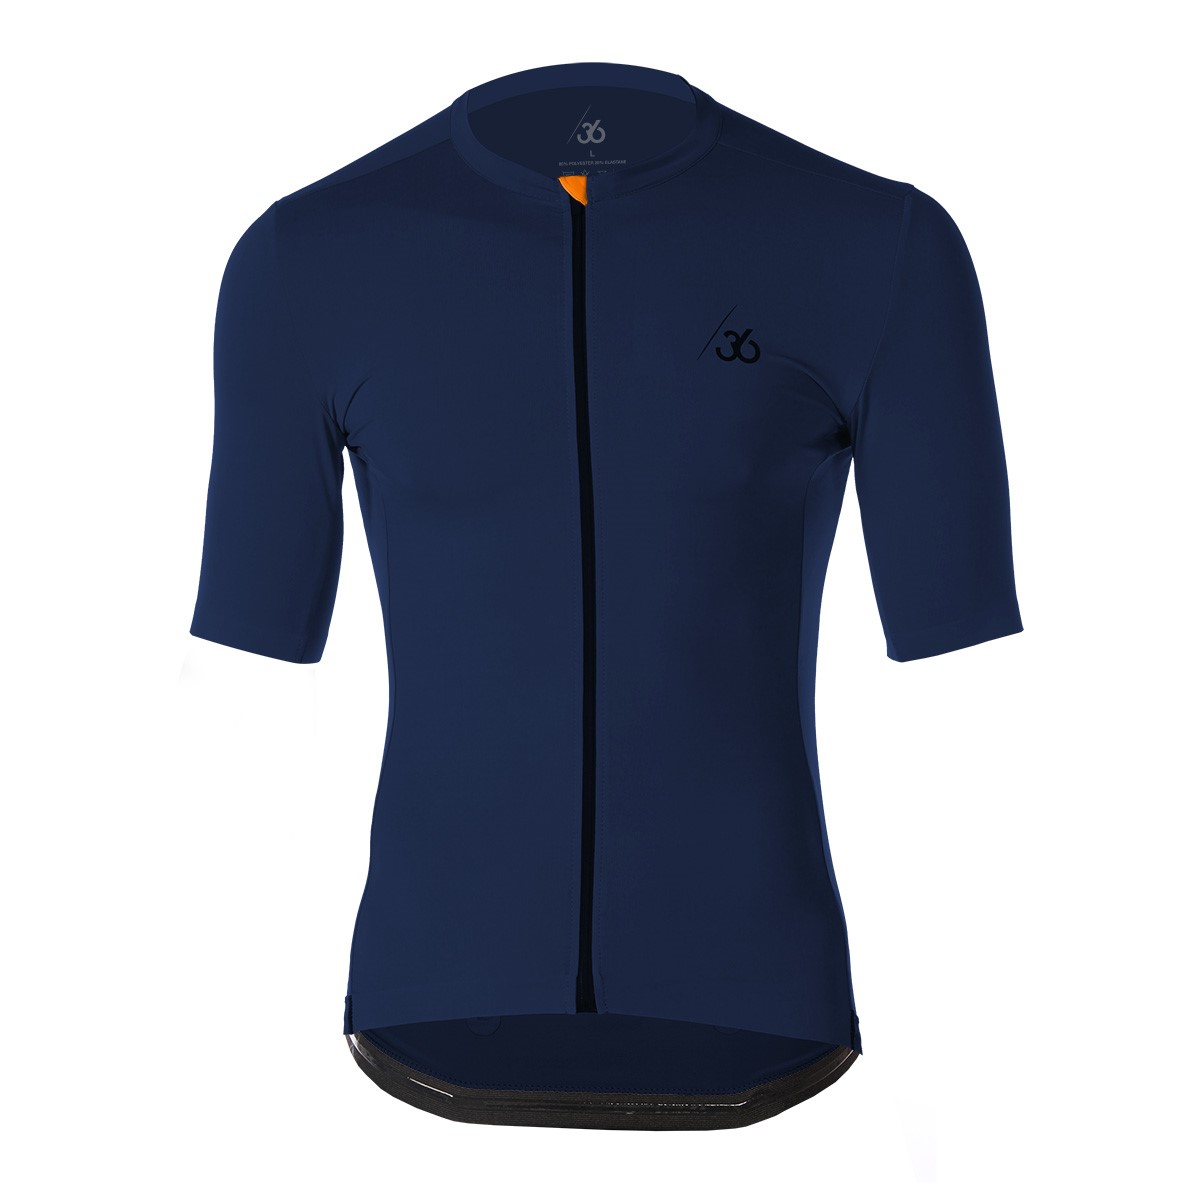 Cycling shirt - Navy blue - Chroma